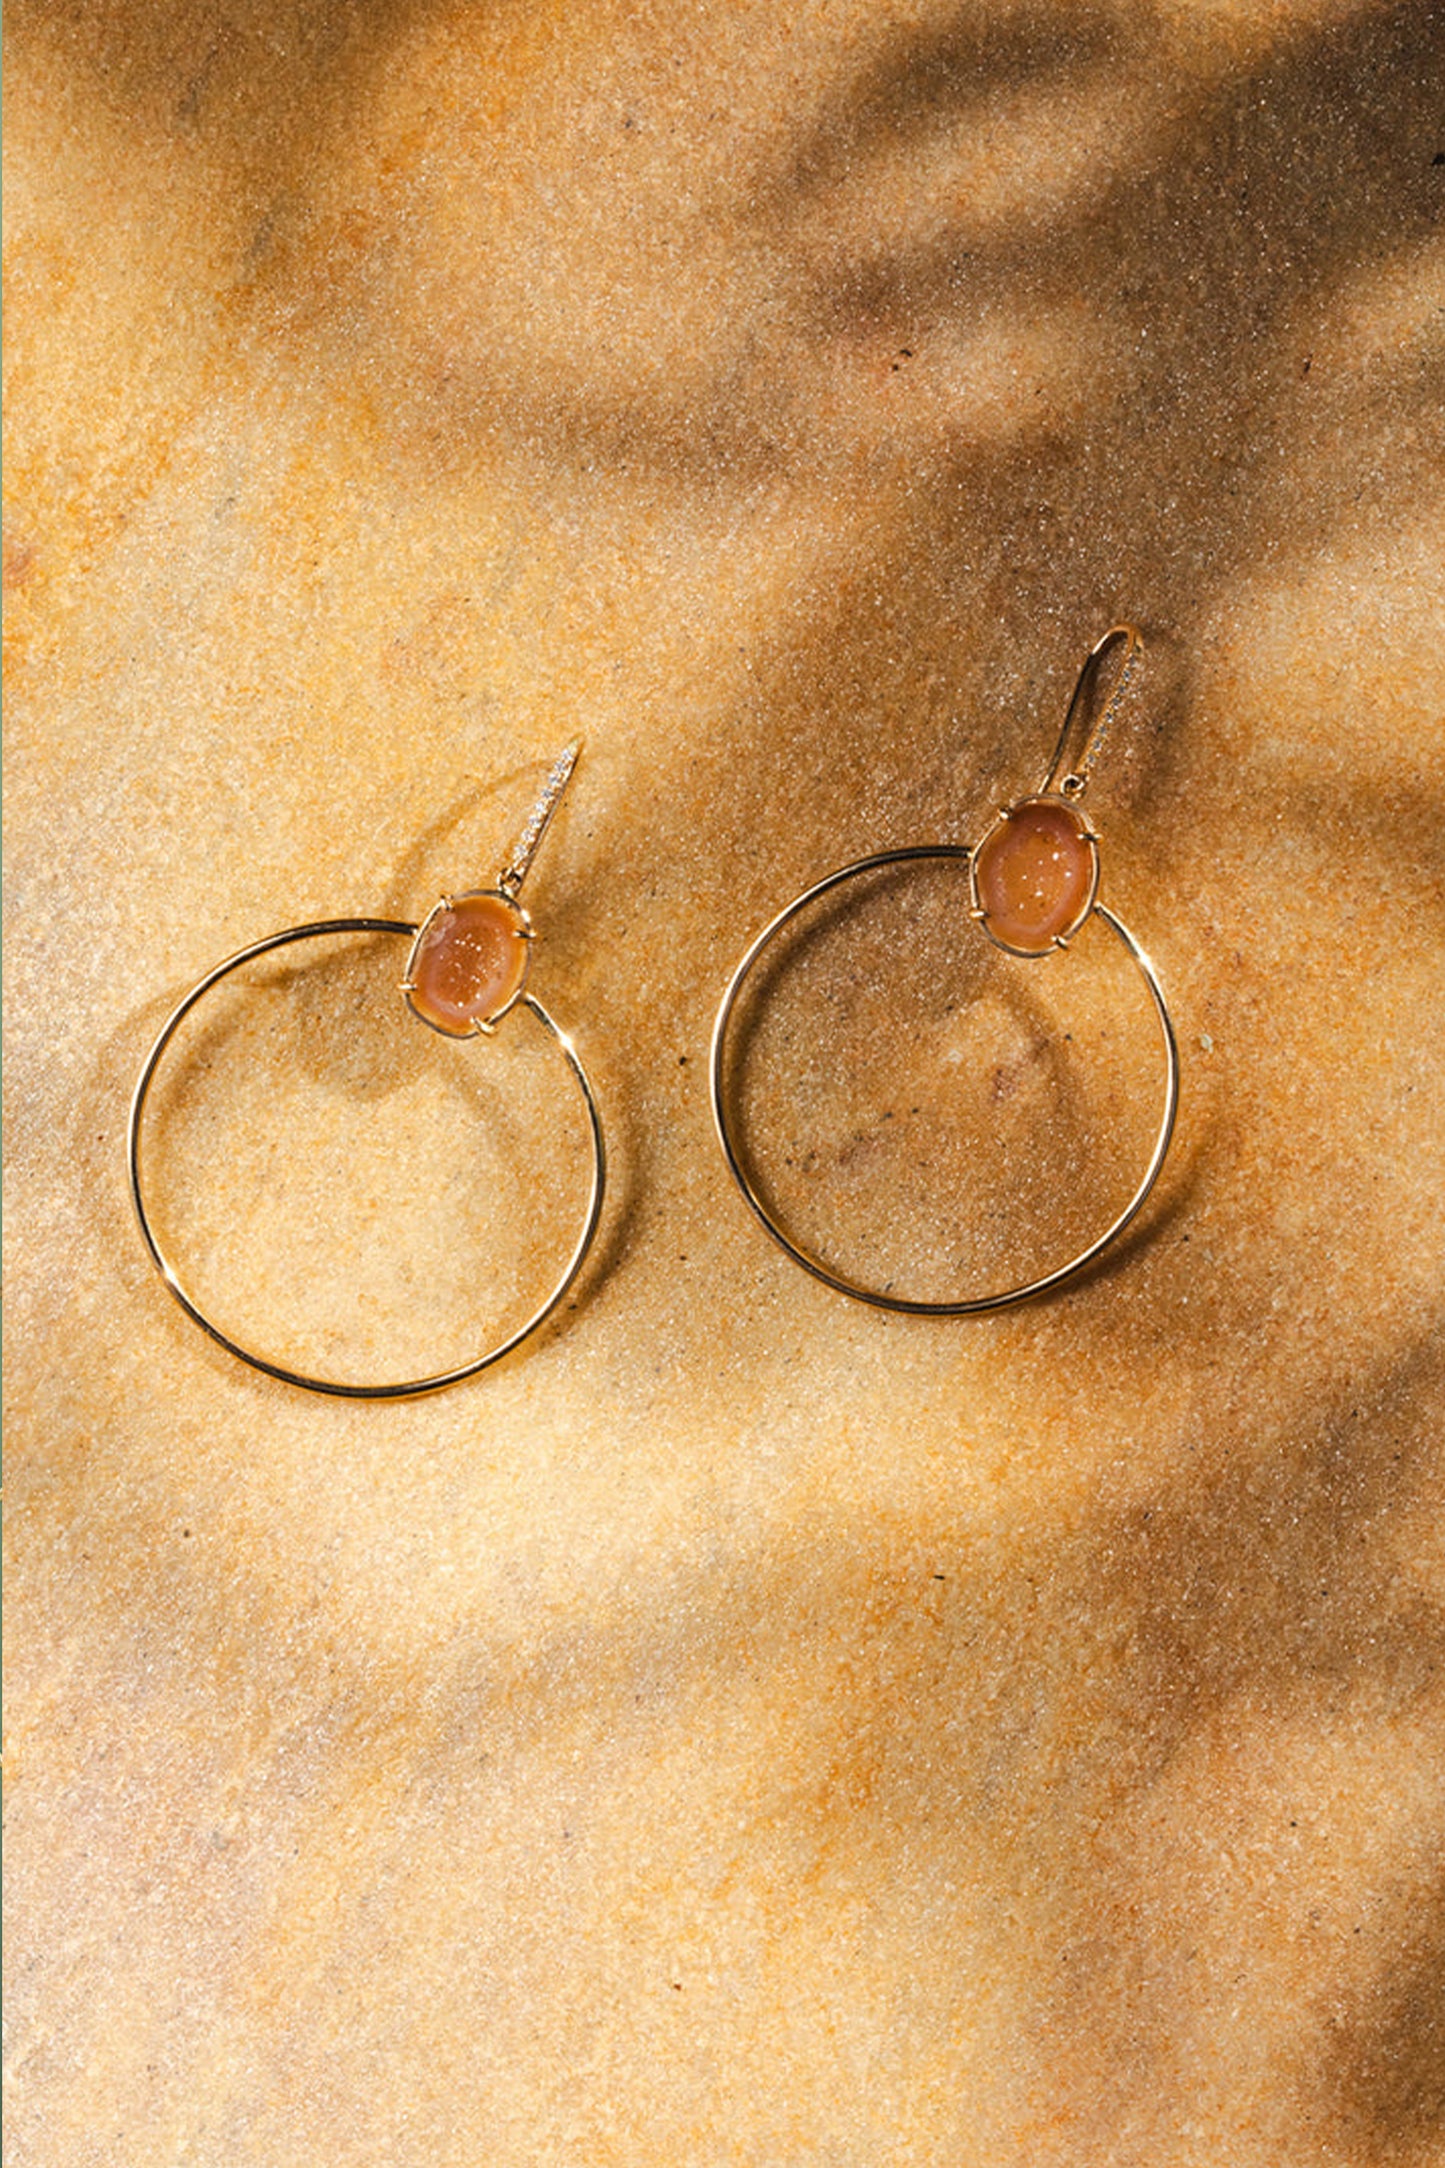 JADE earrings, orange